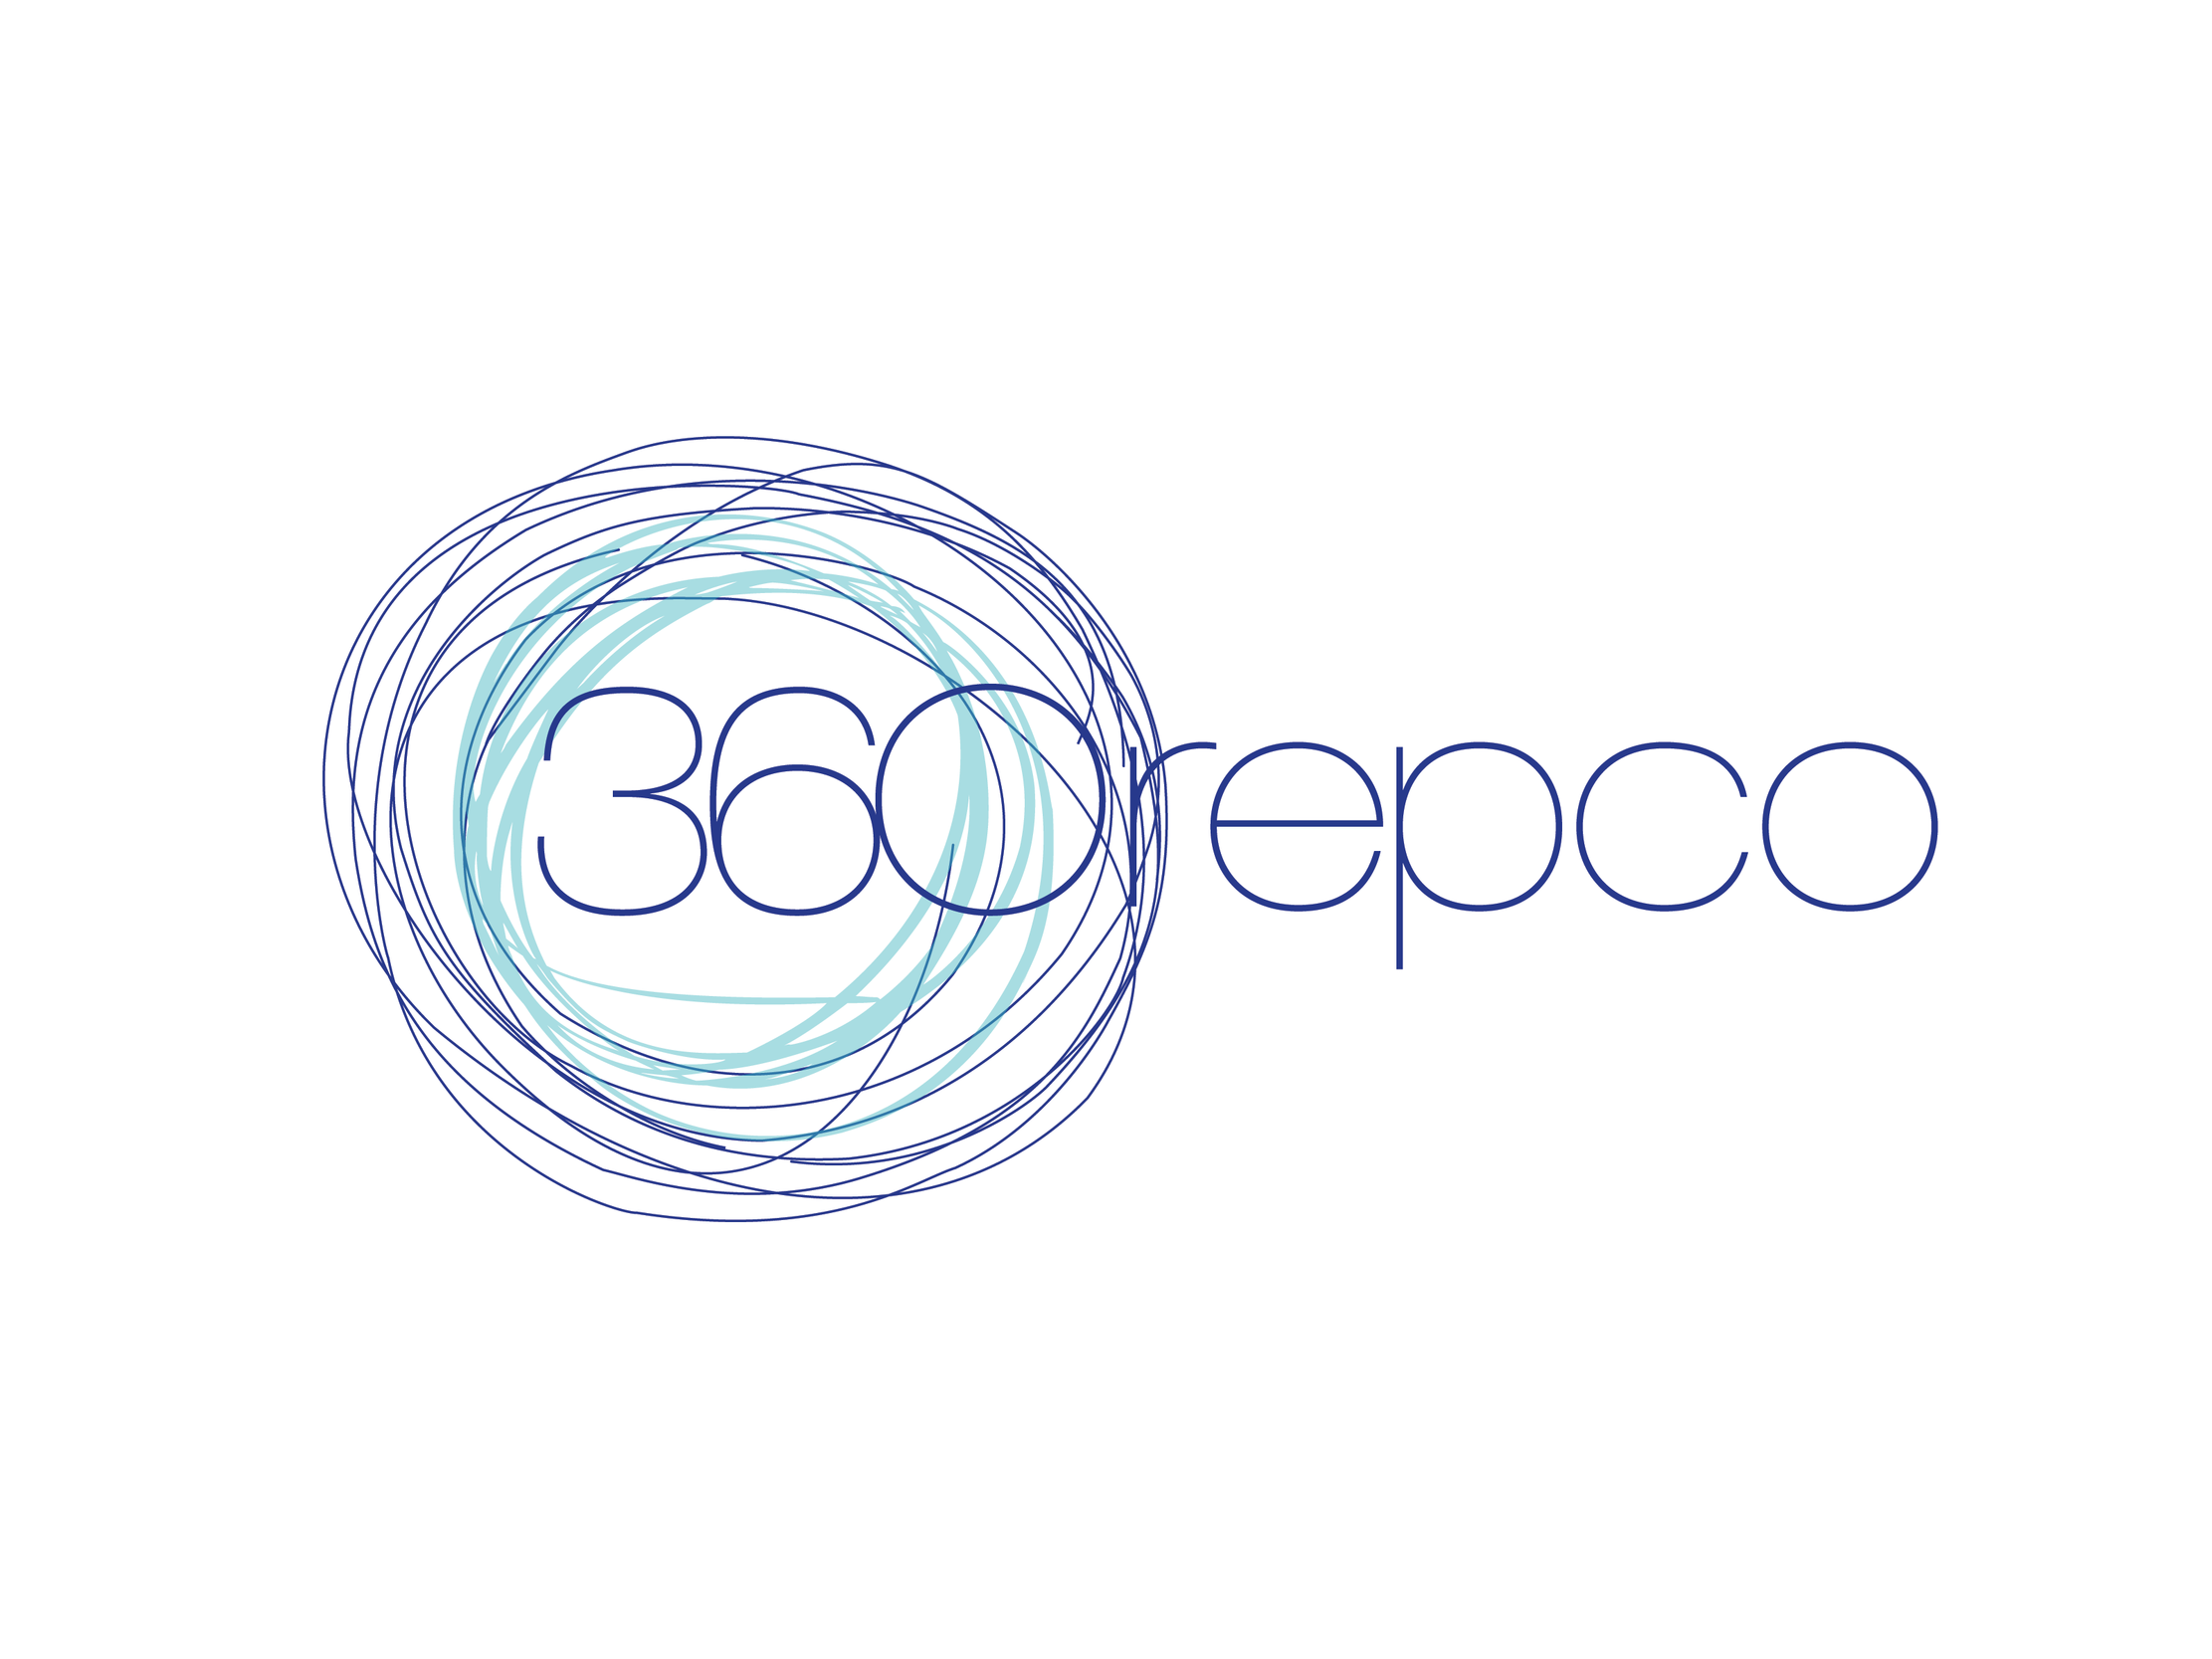 360 repco Theater Company